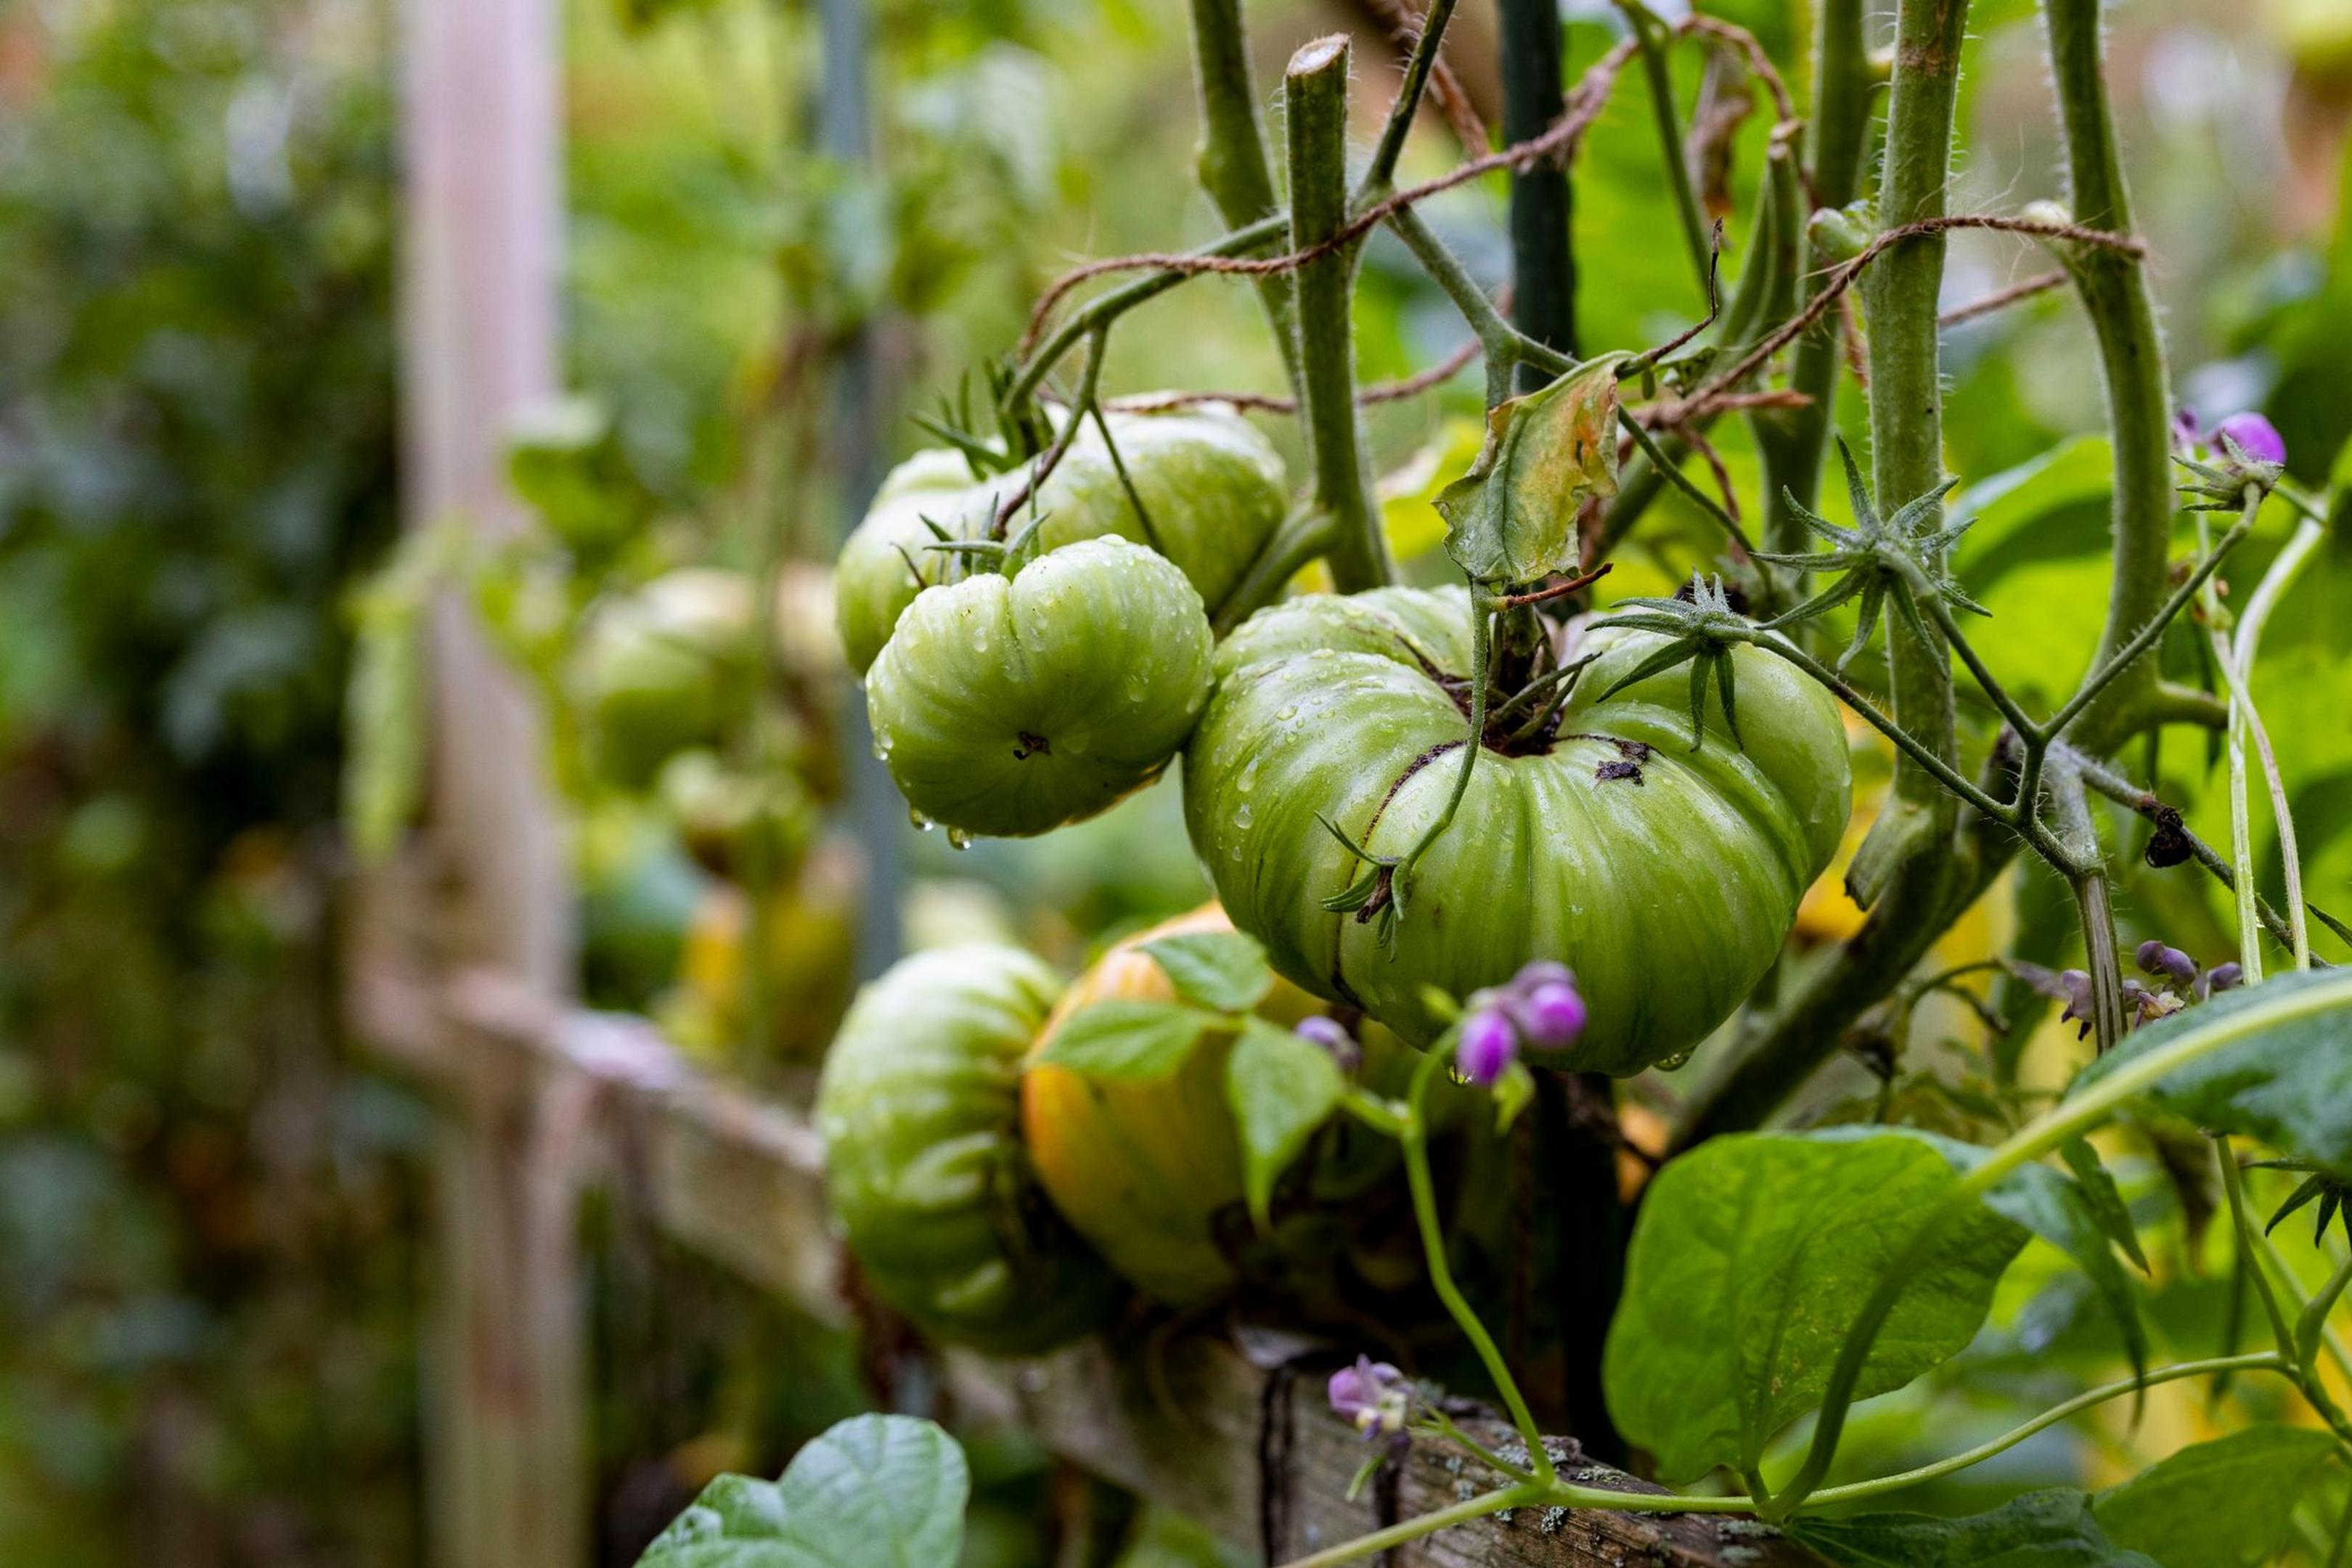 Sie möchten Tomaten aus Tomaten ziehen? Dann können Sie samenfestes Saatgut kaufen und aus den ersten Früchten der Ernte Kerne für neue Pflanzen gewinnen.